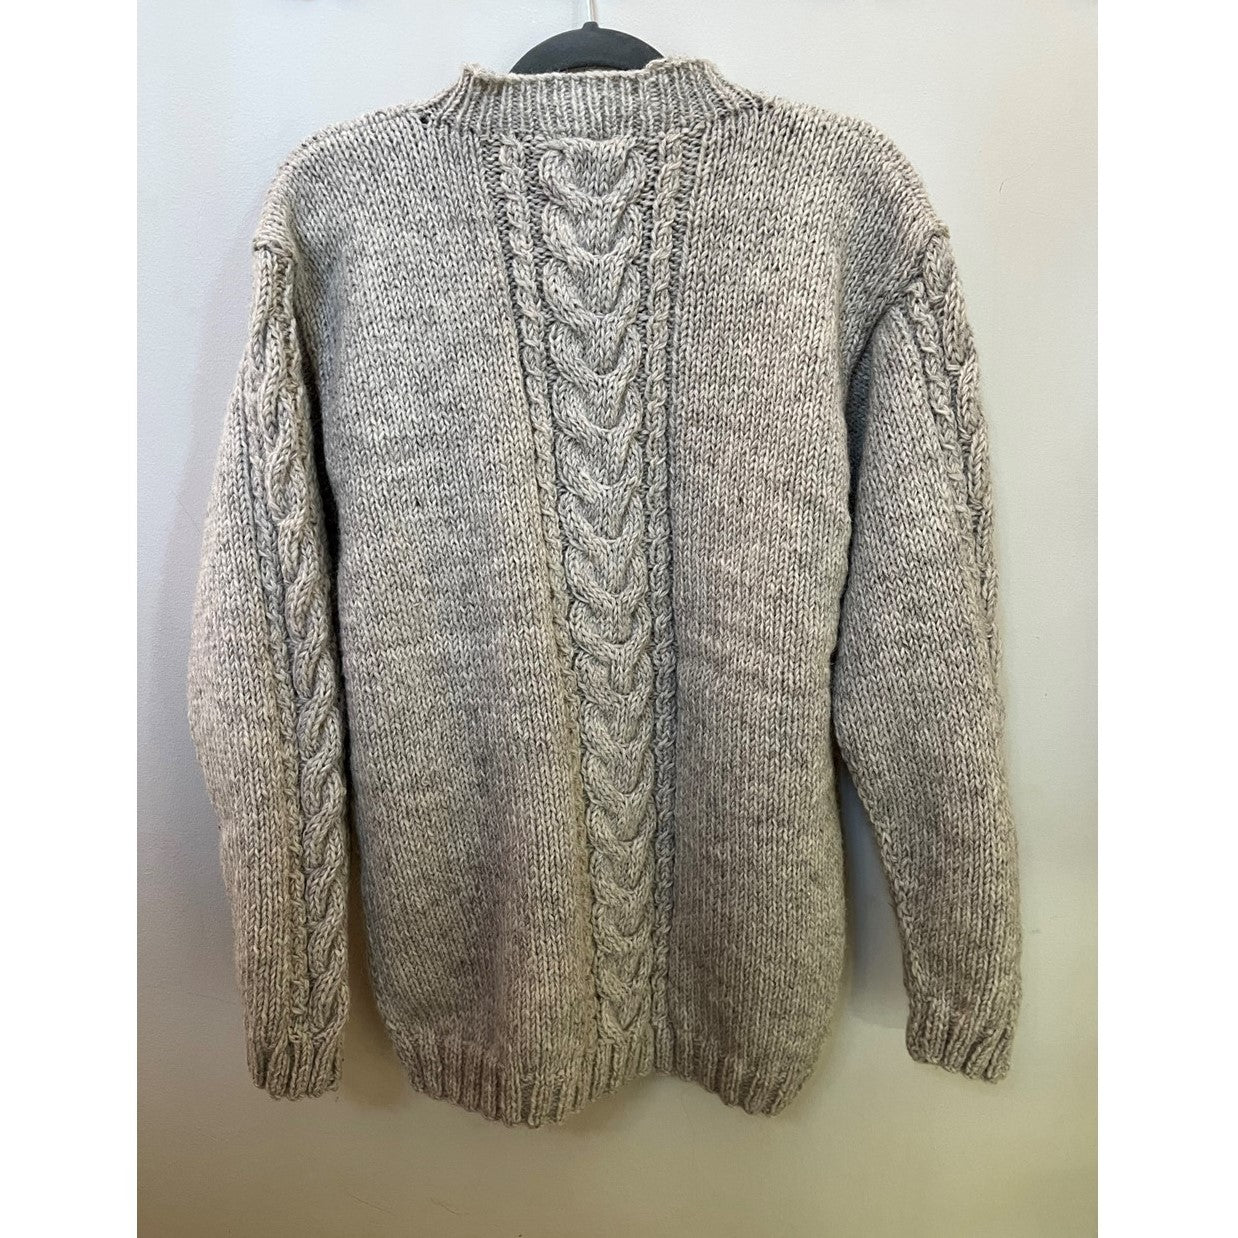 Chamonix Sweater in Oatmeal - Women's